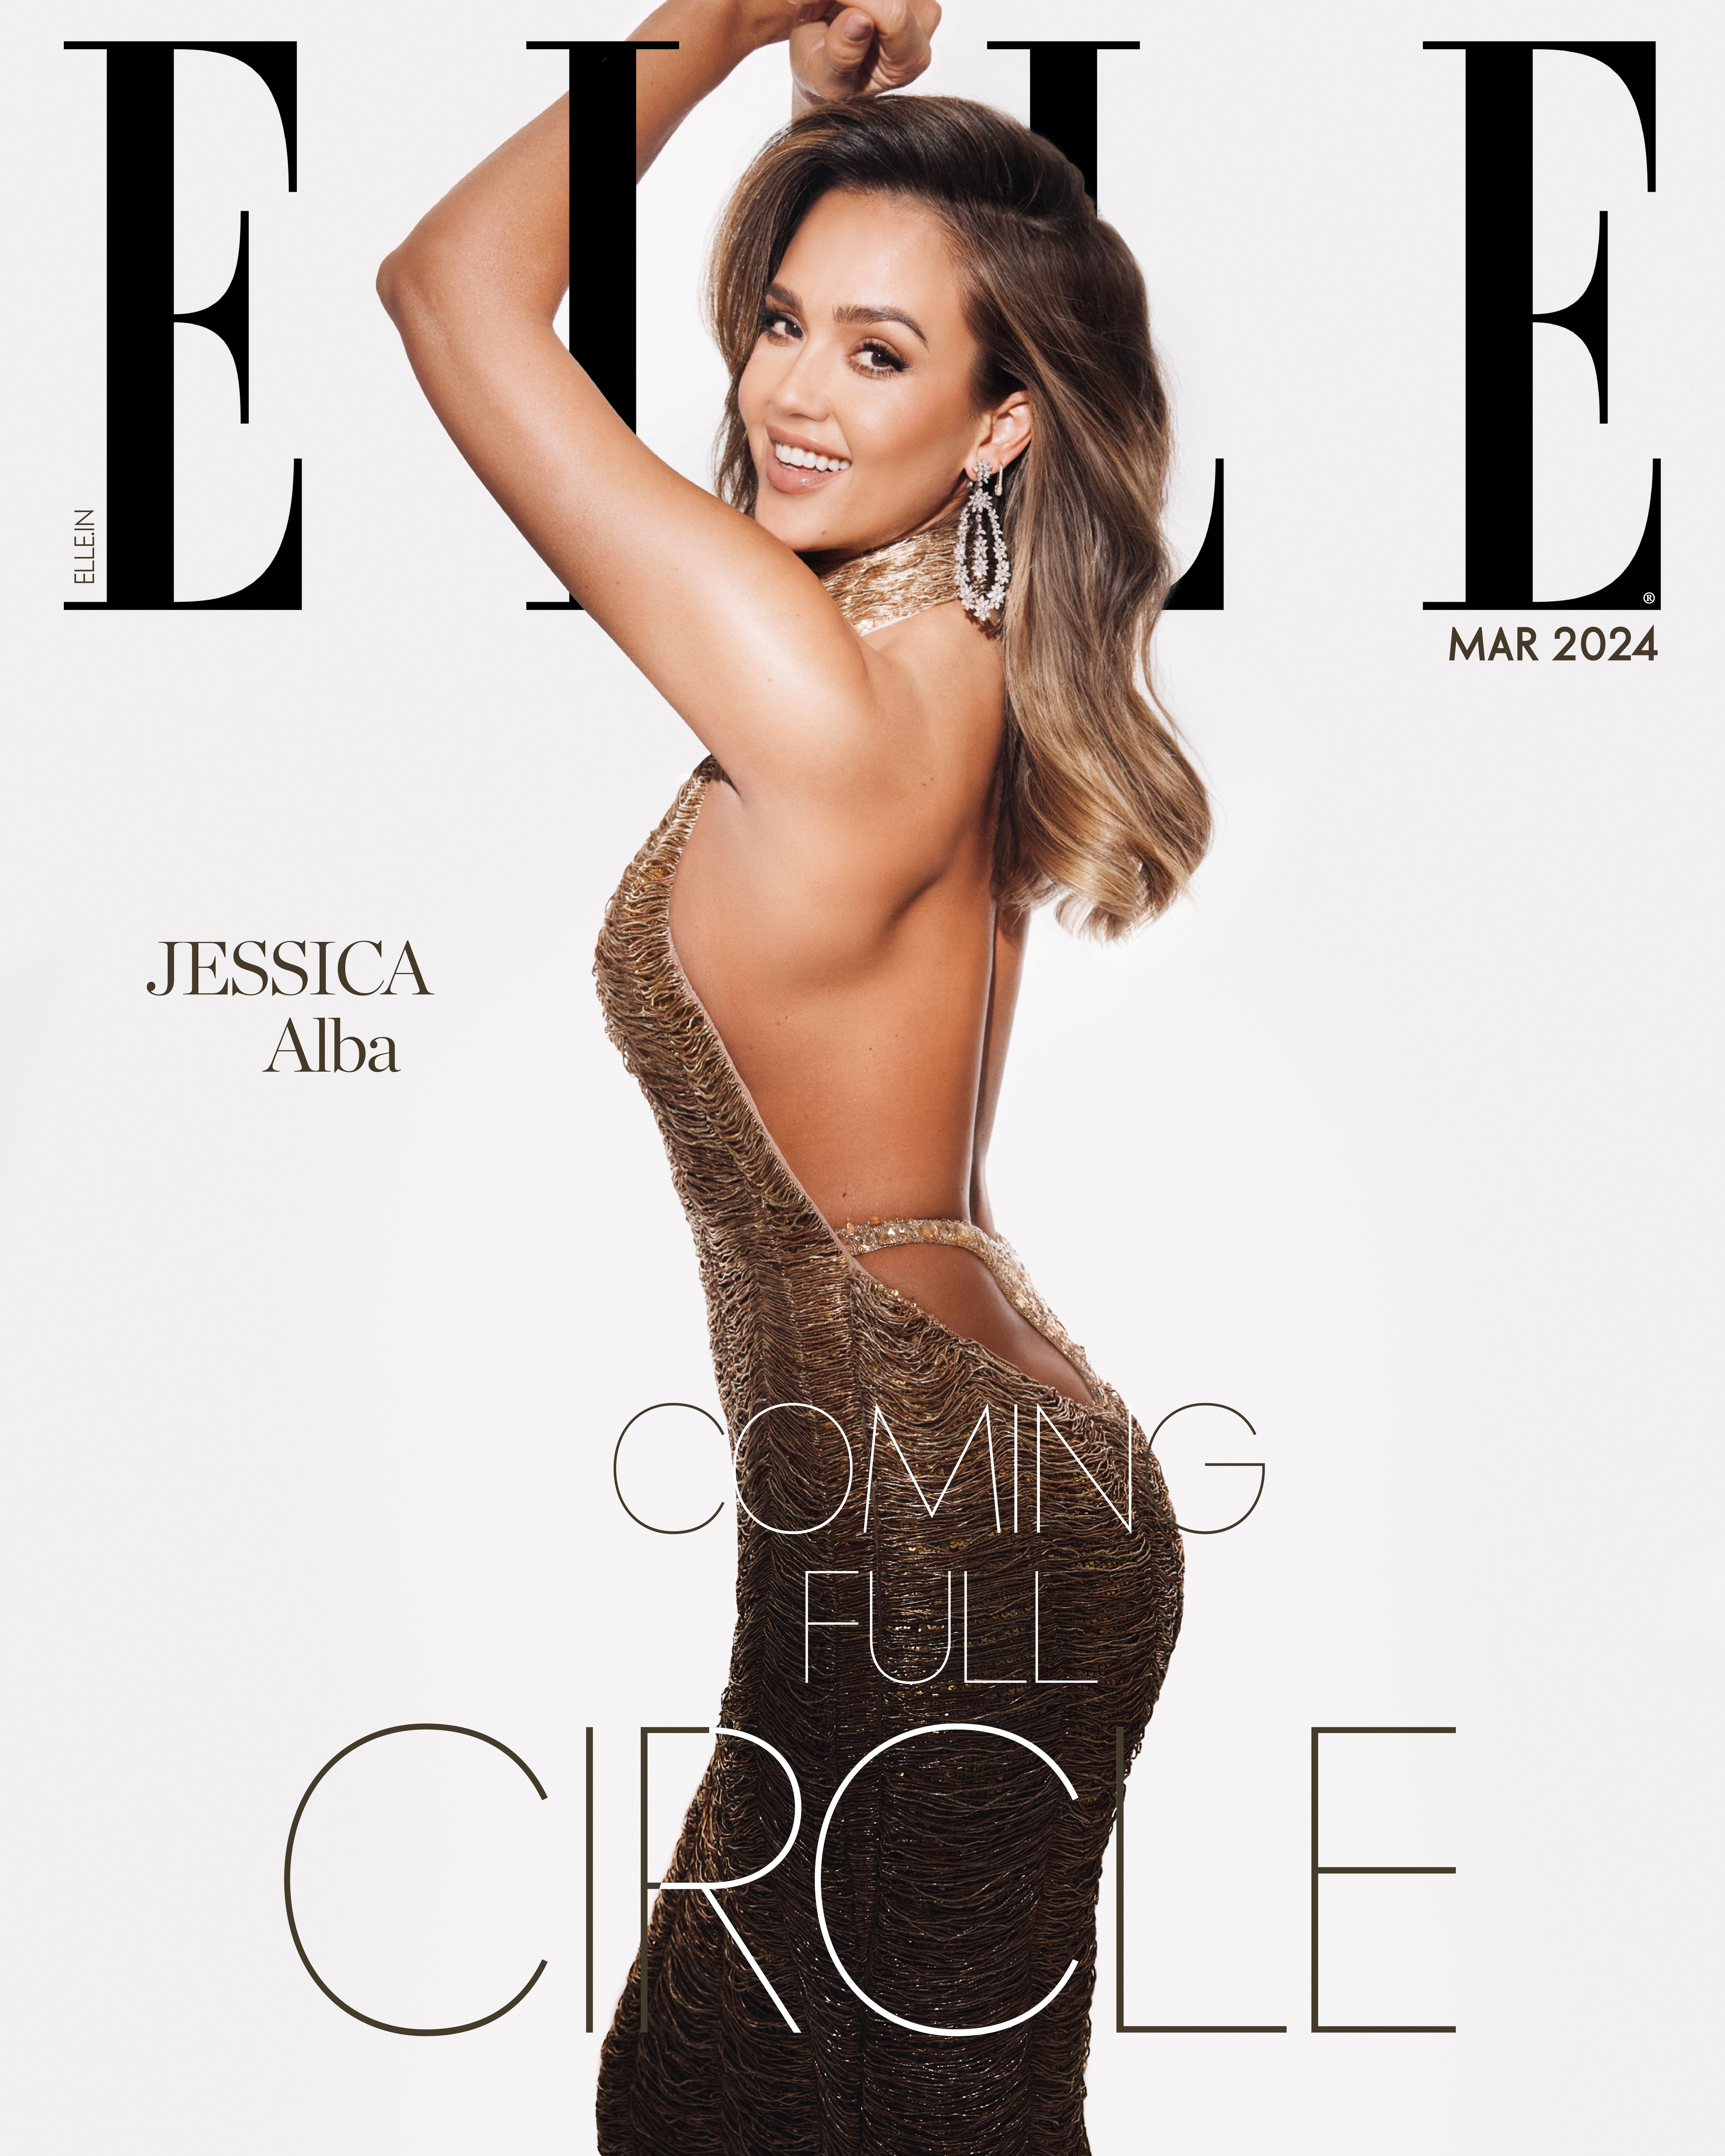 Jessica auf dem Cover von Elle India